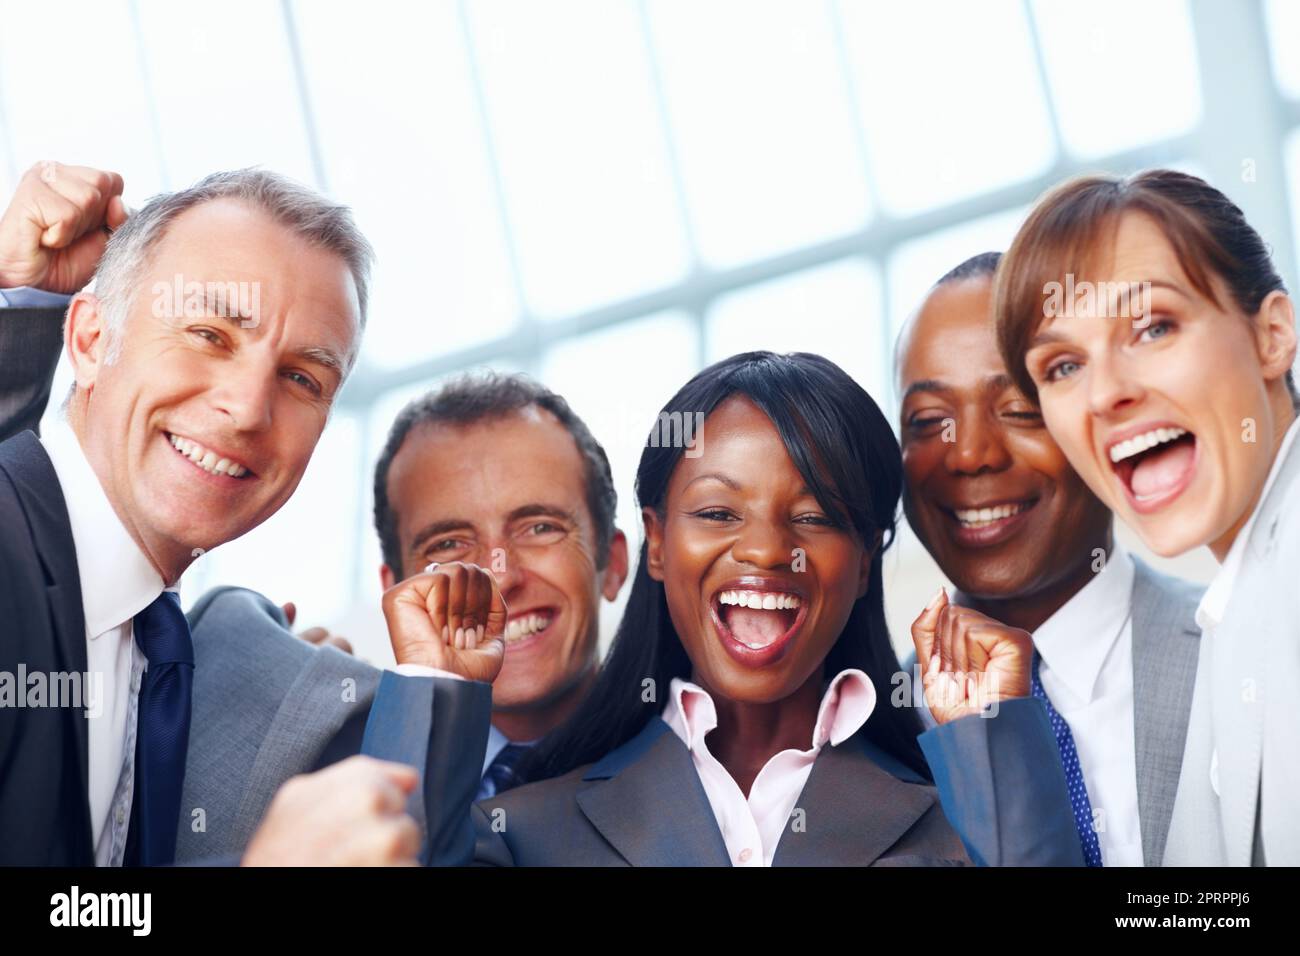 Happy multi ethnic business people enjoying success. Closeup portrait of happy multi ethnic business people enjoying success. Stock Photo